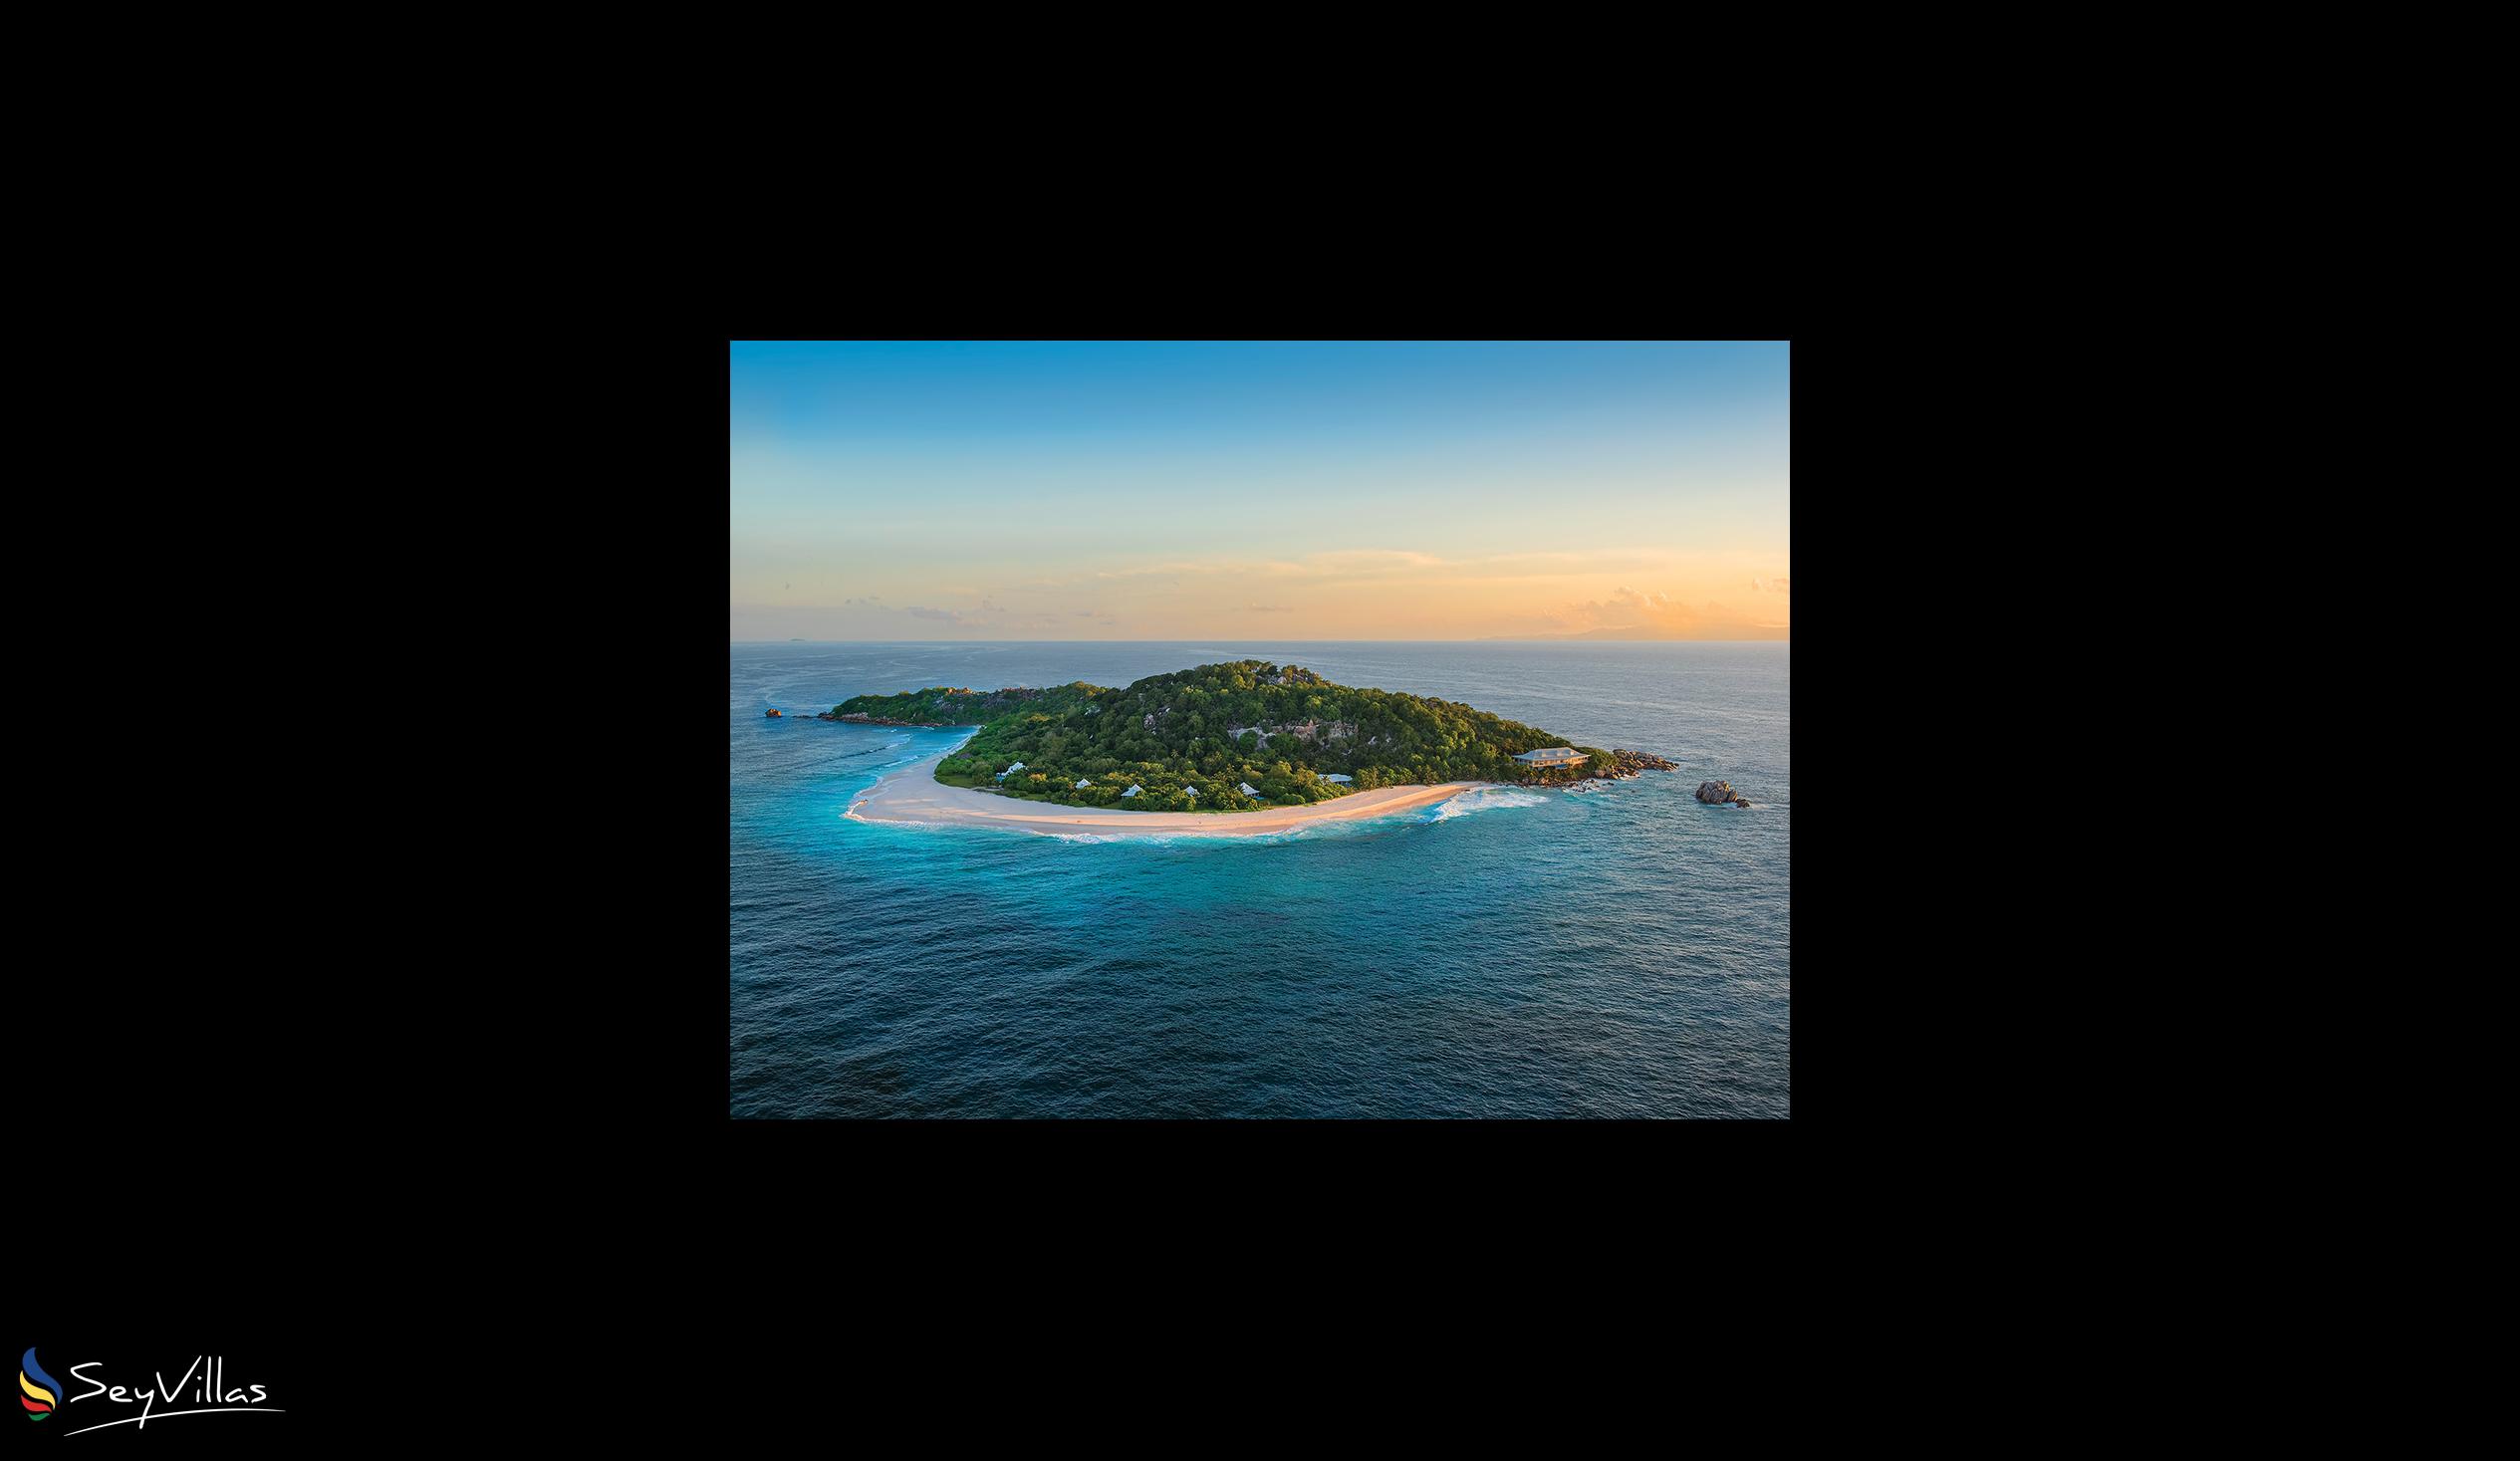 Foto 19: Cousine Island Seychelles - Aussenbereich - Cousine Island (Seychellen)